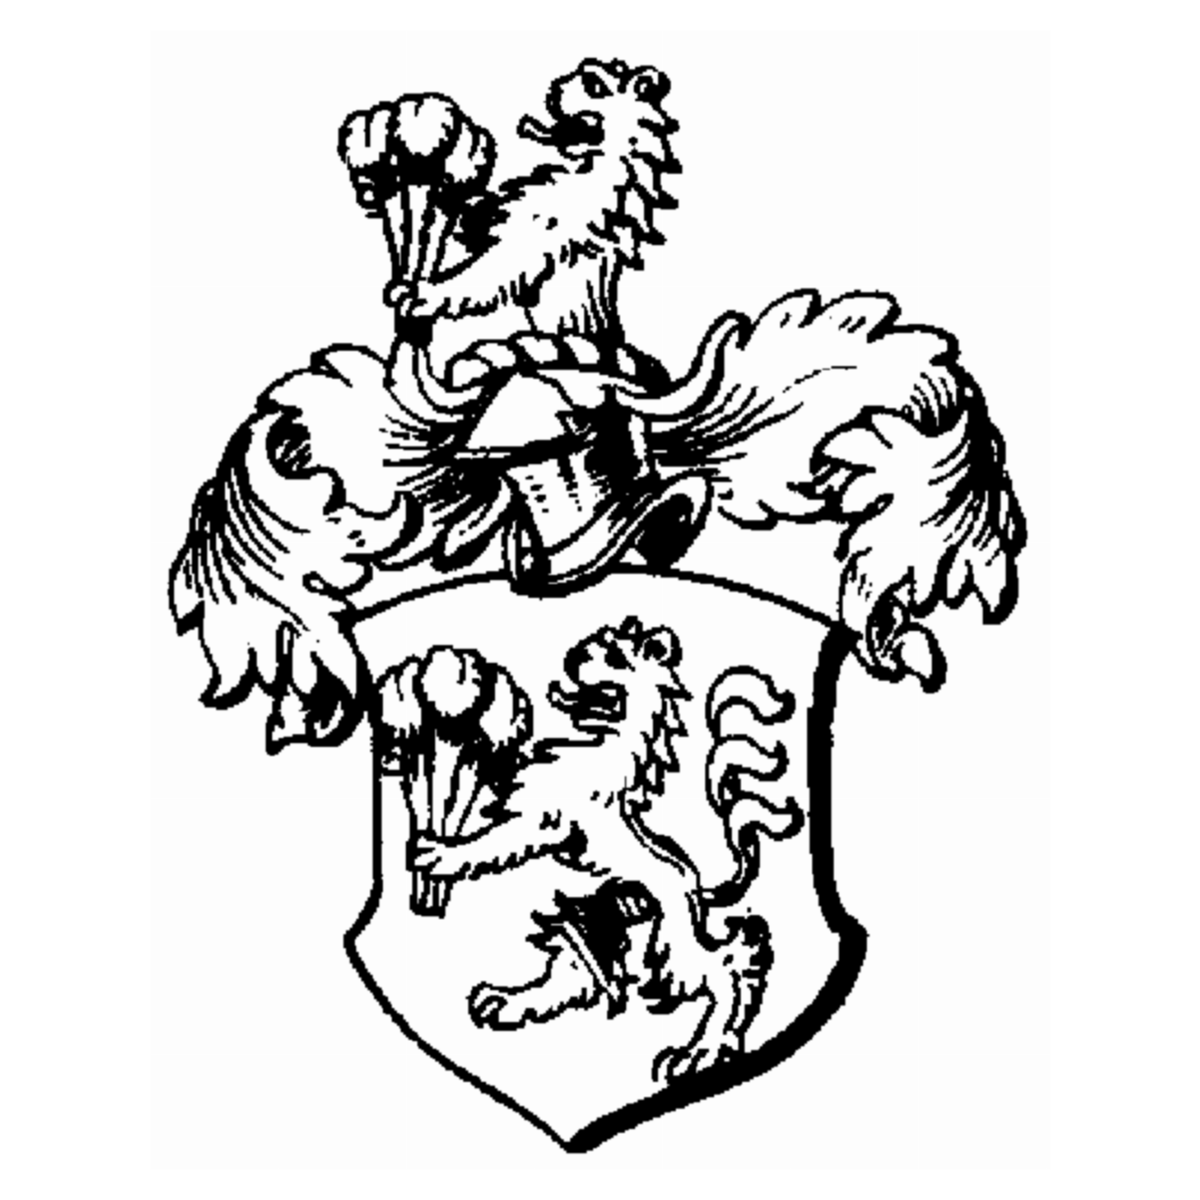 Wappen der Familie Brückner